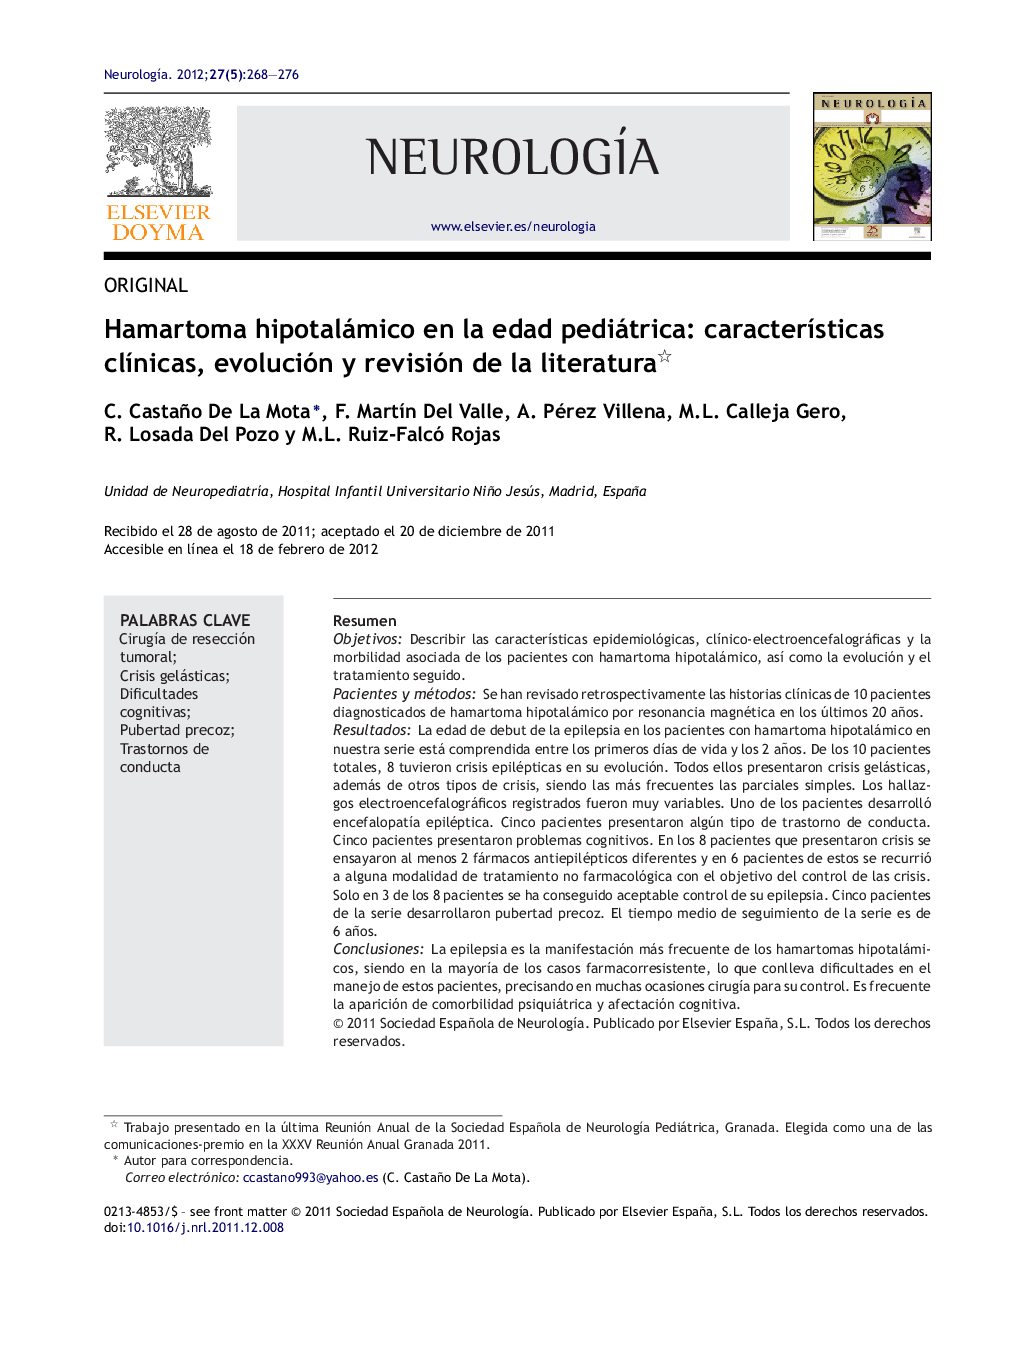 Hamartoma hipotalámico en la edad pediátrica: características clínicas, evolución y revisión de la literatura 